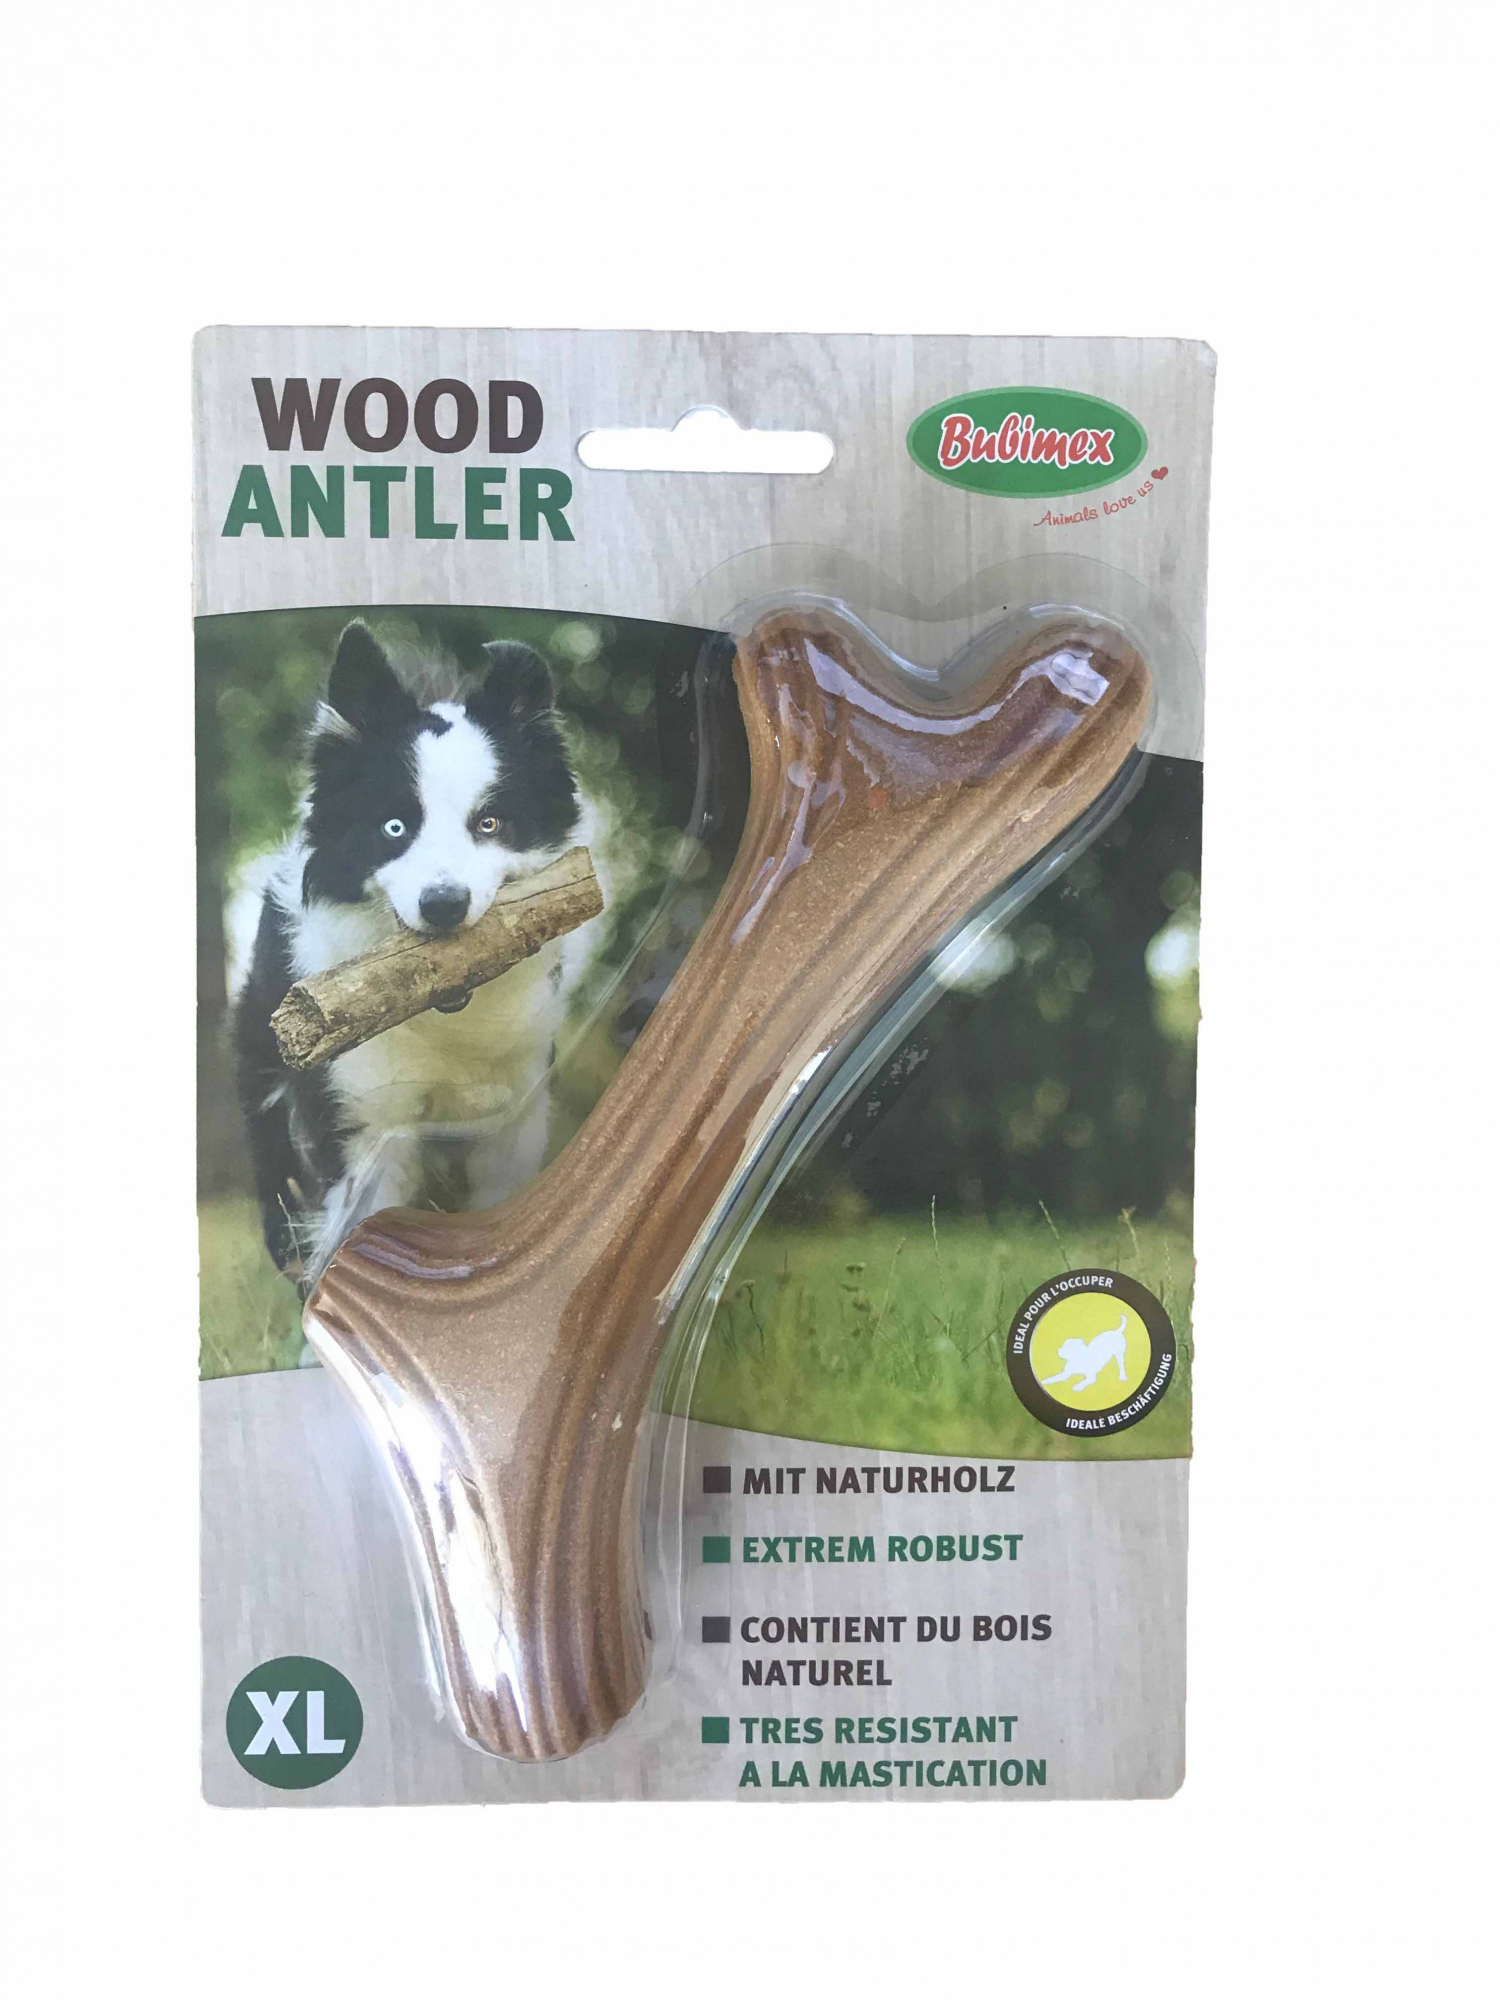 Brinquedo dentário Bubimex Wood Antler - vários tamanhos disponíveis